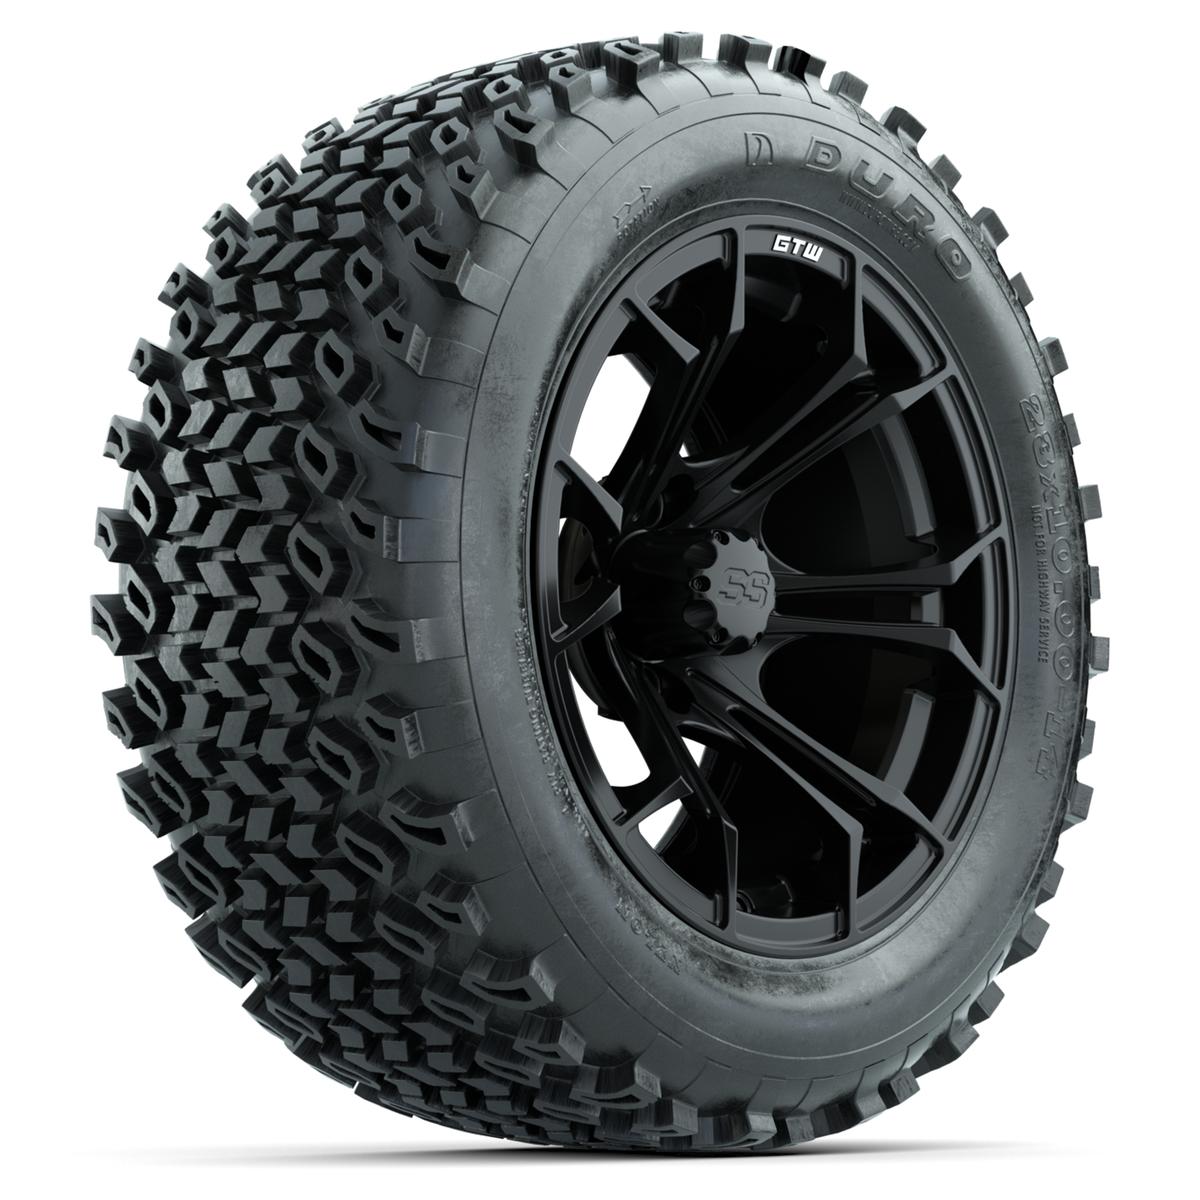 GTW Spyder Matte Black 14 in Wheels with 23x10-14 Duro Desert All-Terrain Tires – Full Set